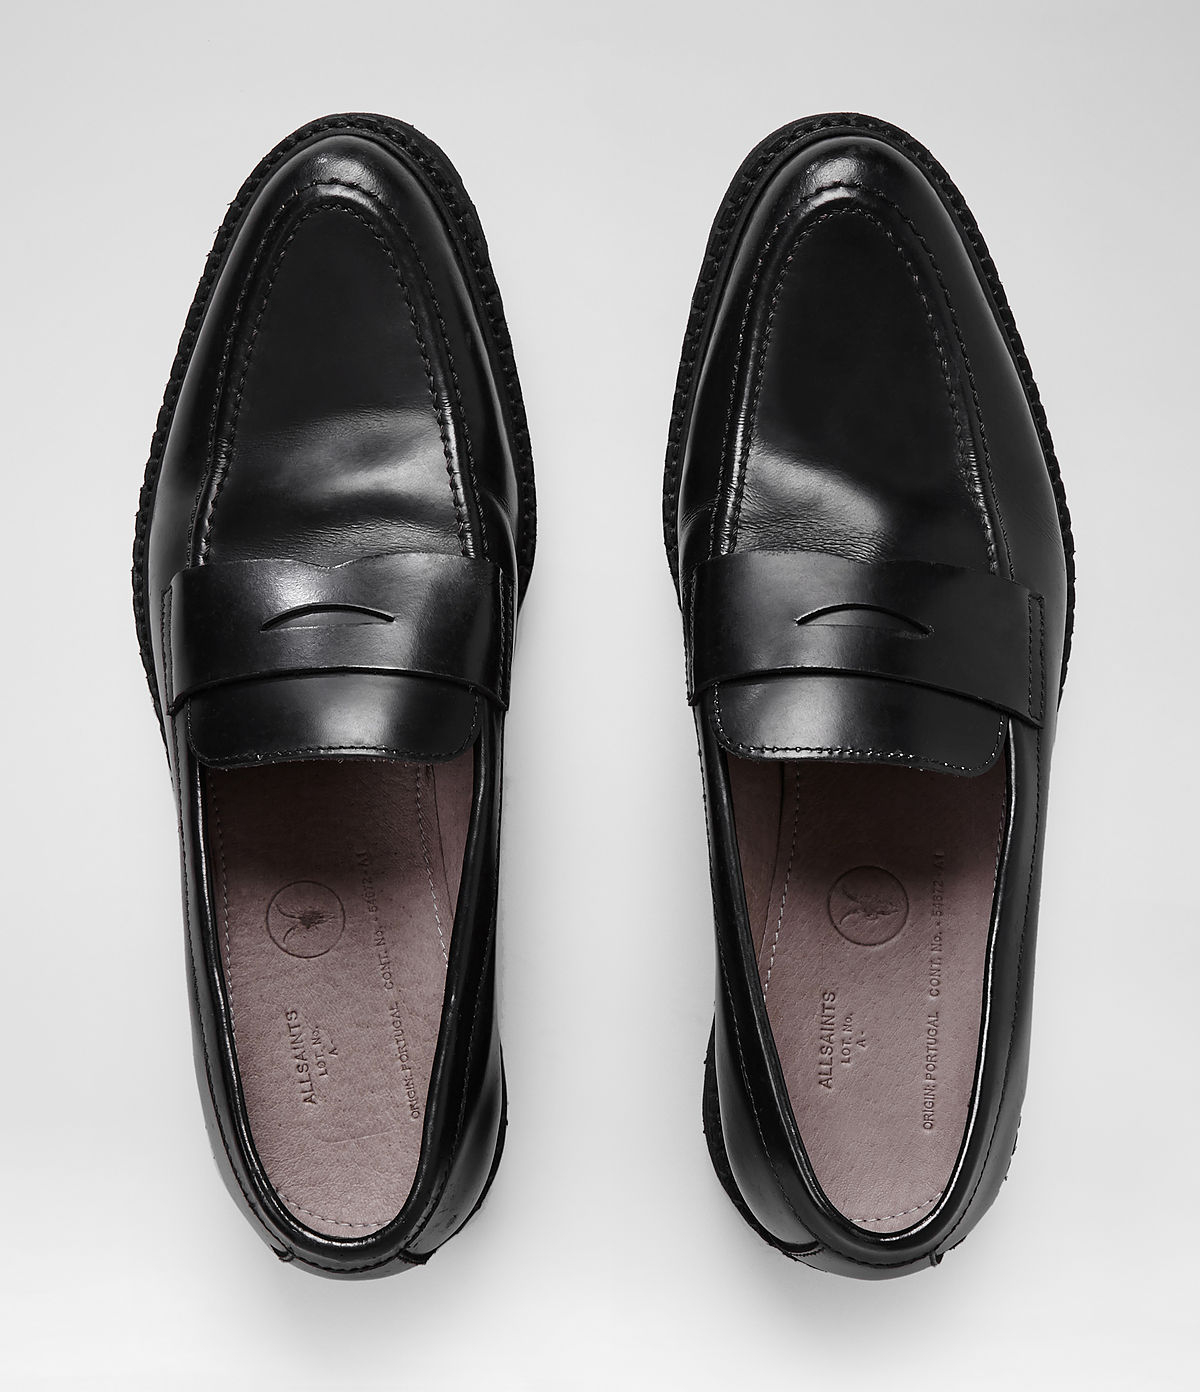 AllSaints Dedham Loafer in Black for Men - Lyst